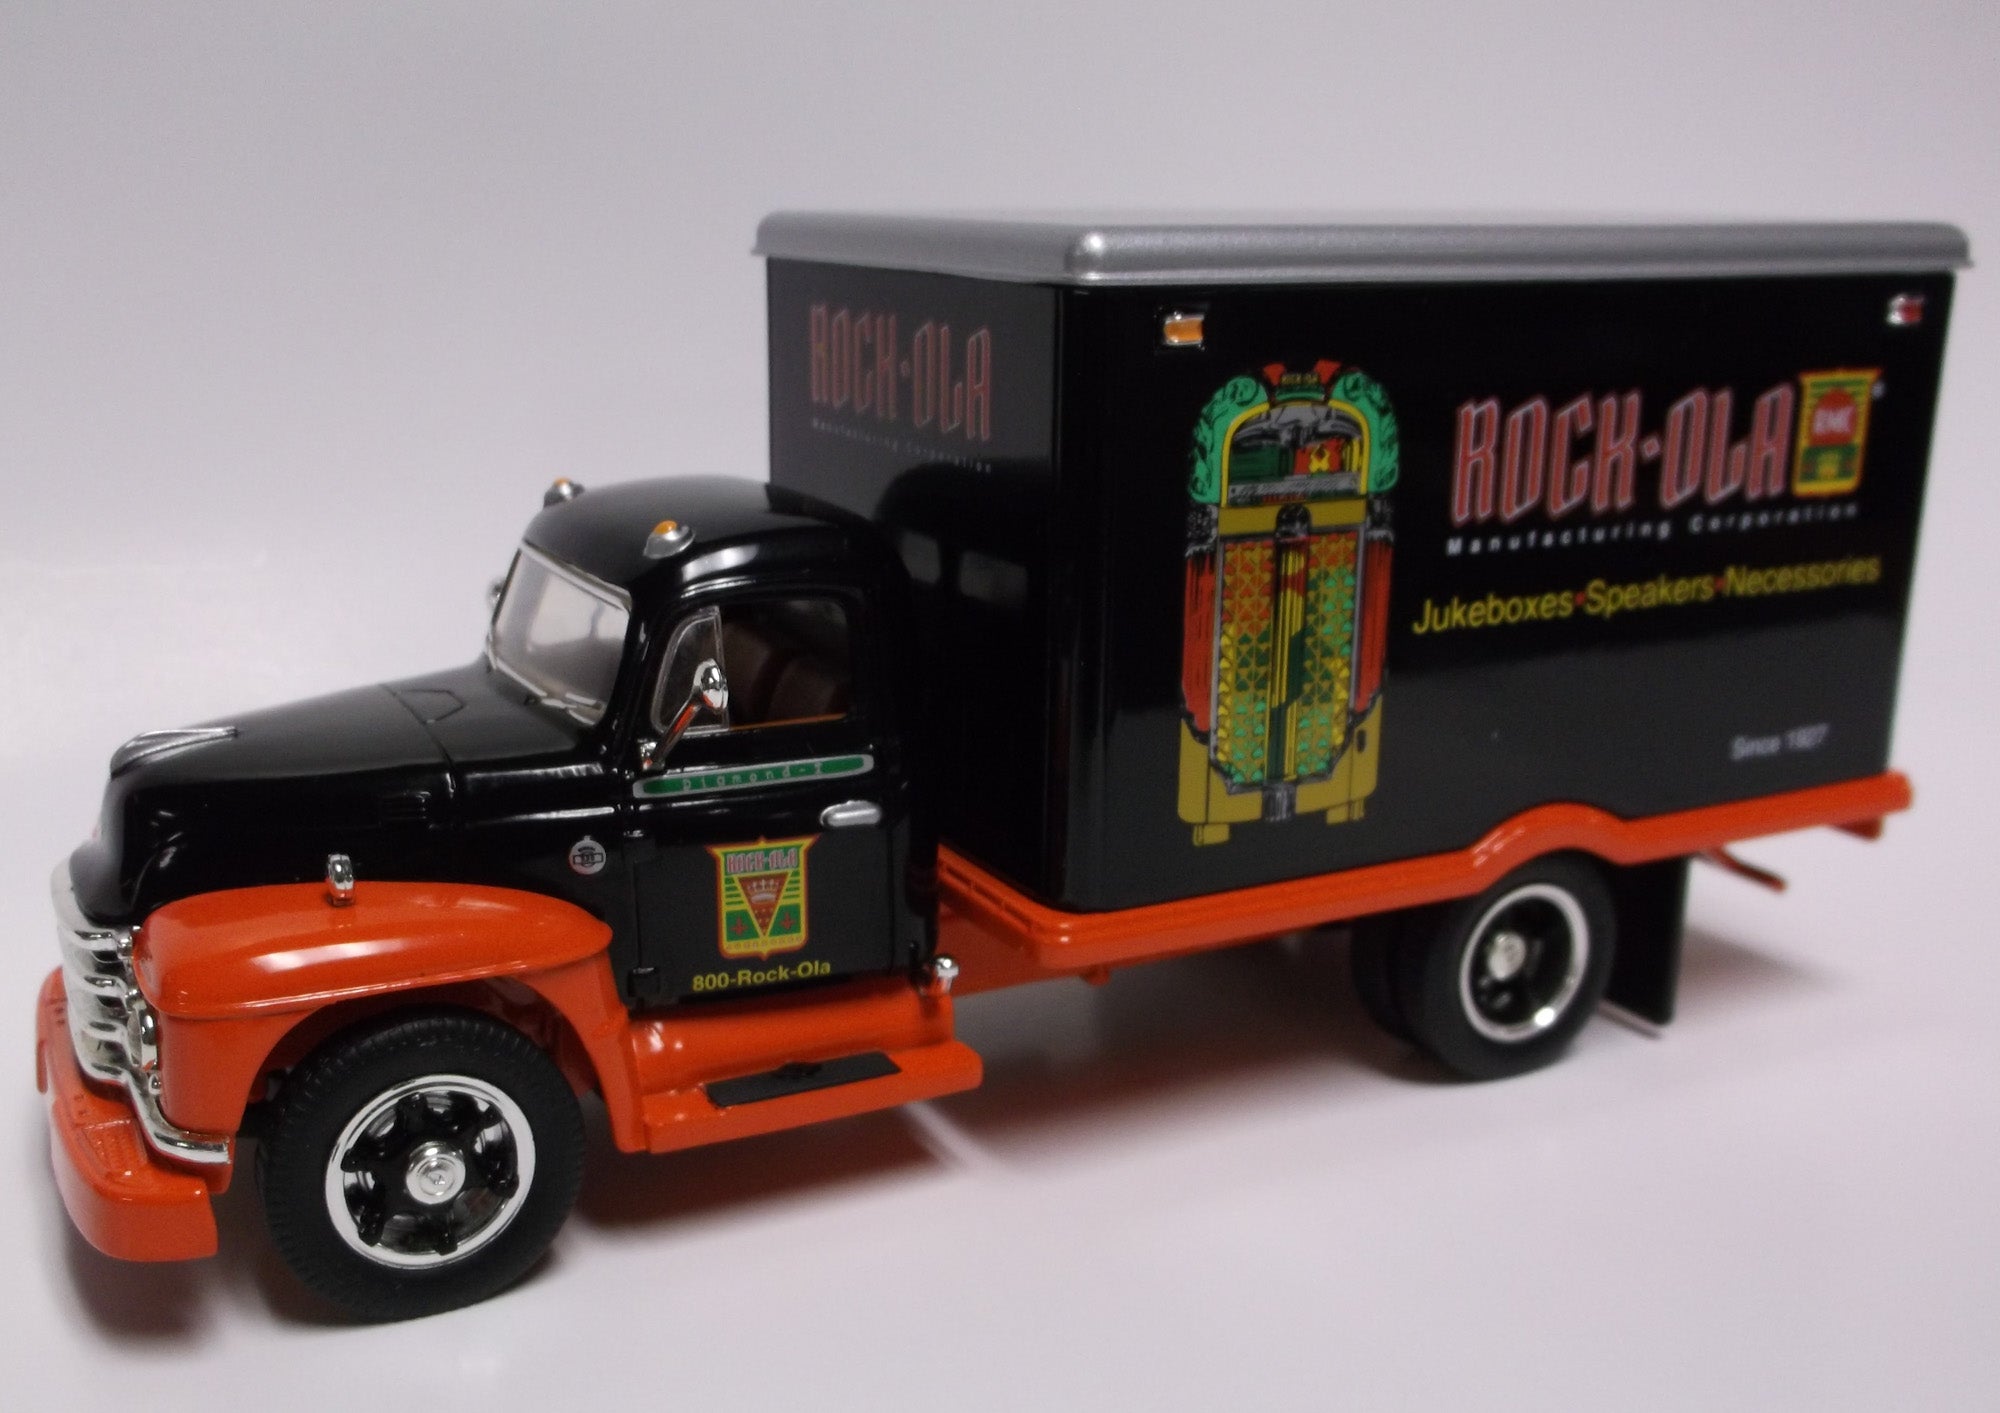 Rock-Ola Die Cast Truck